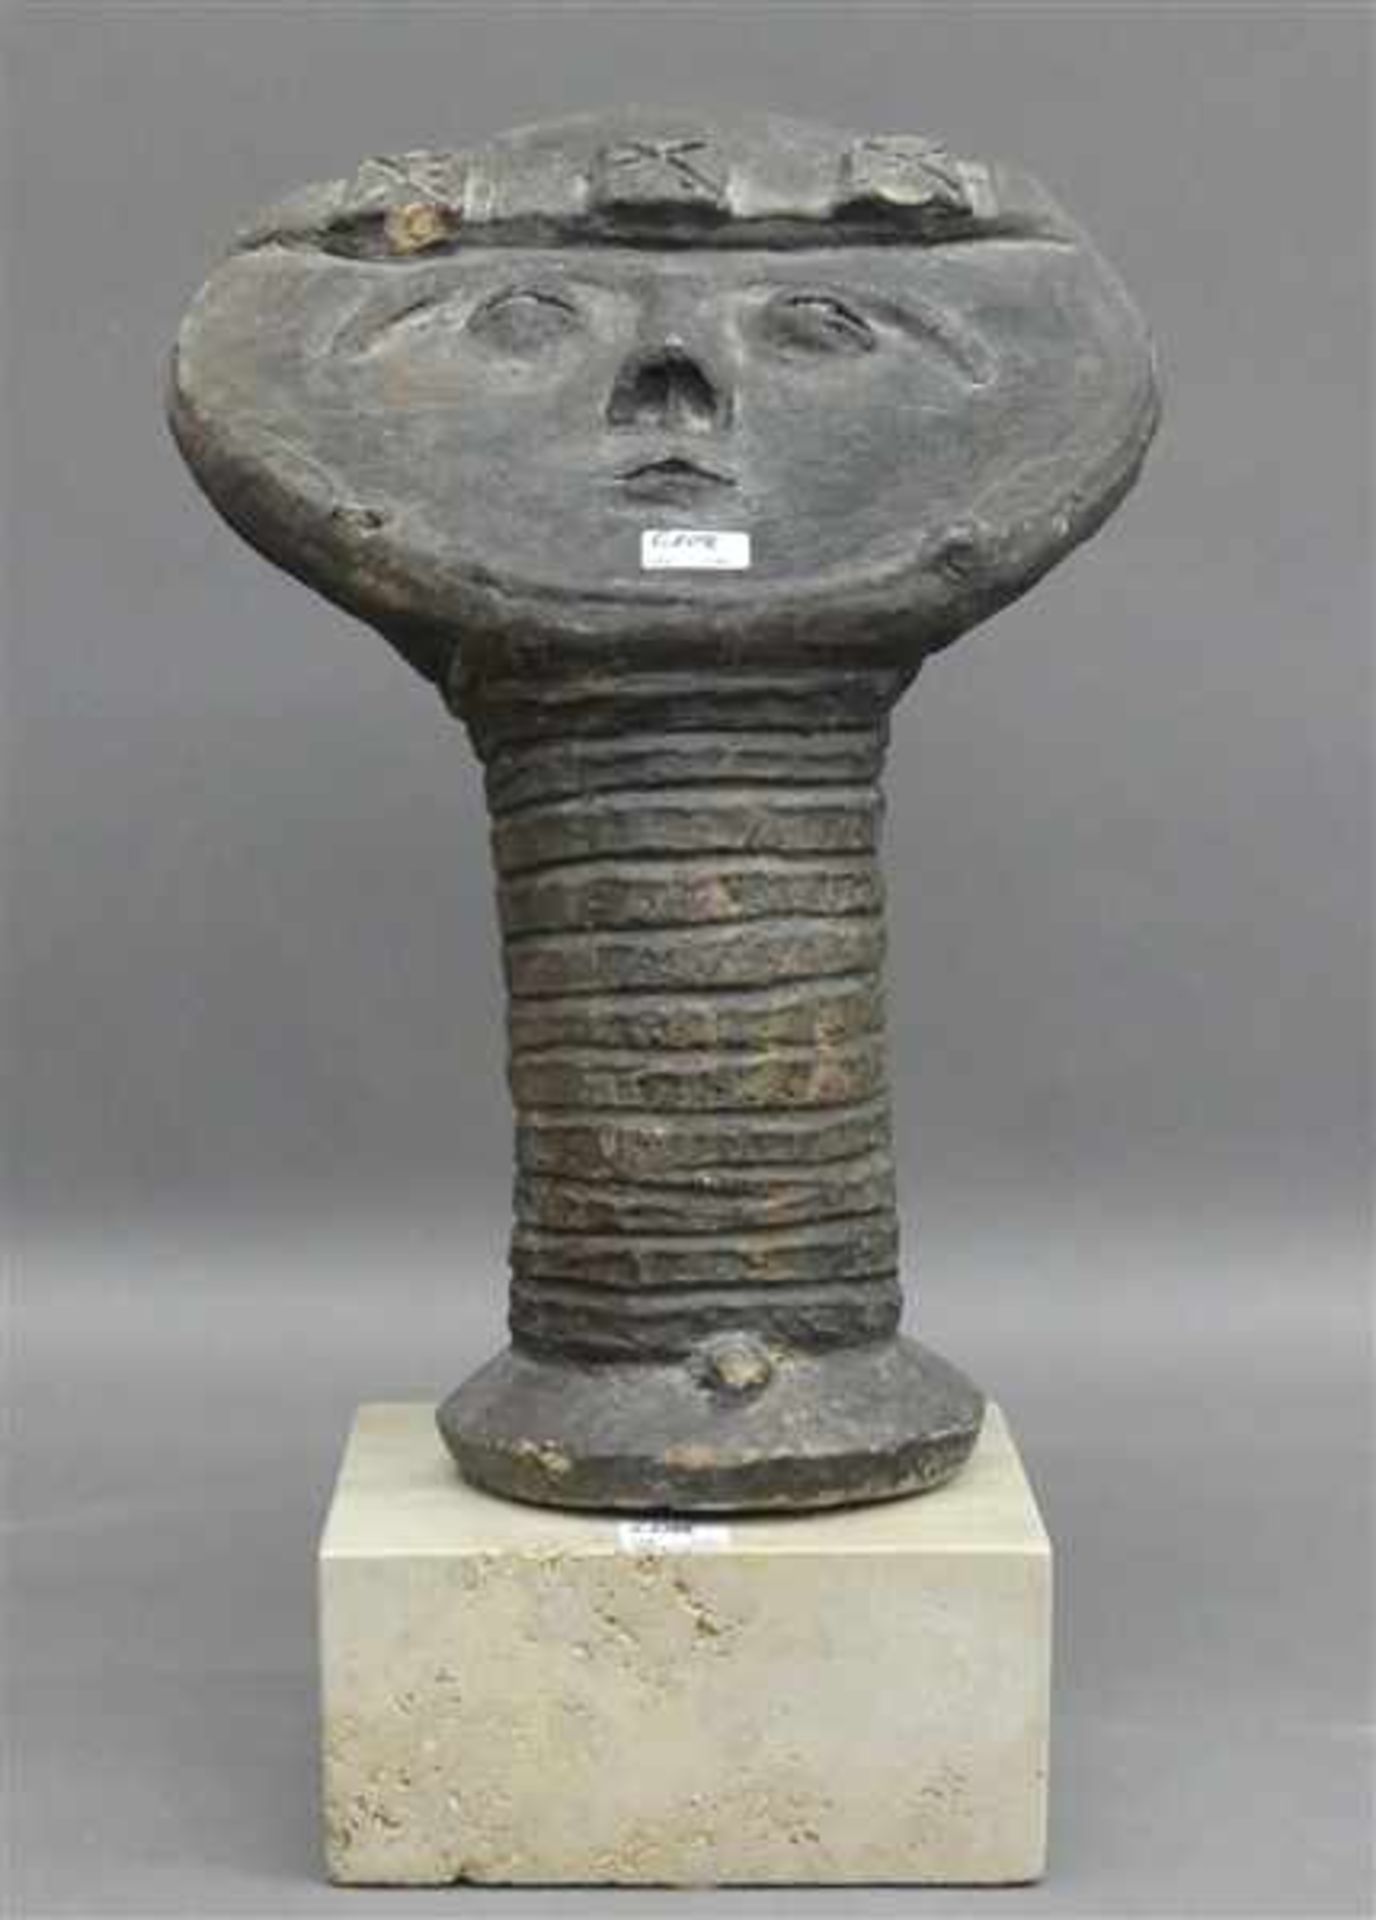 TonskulpturAfrika, wohl Ashanti, Kopf mit Stirnband, auf Steinsockel, h 38 cm,- - -20.00 % buyer's